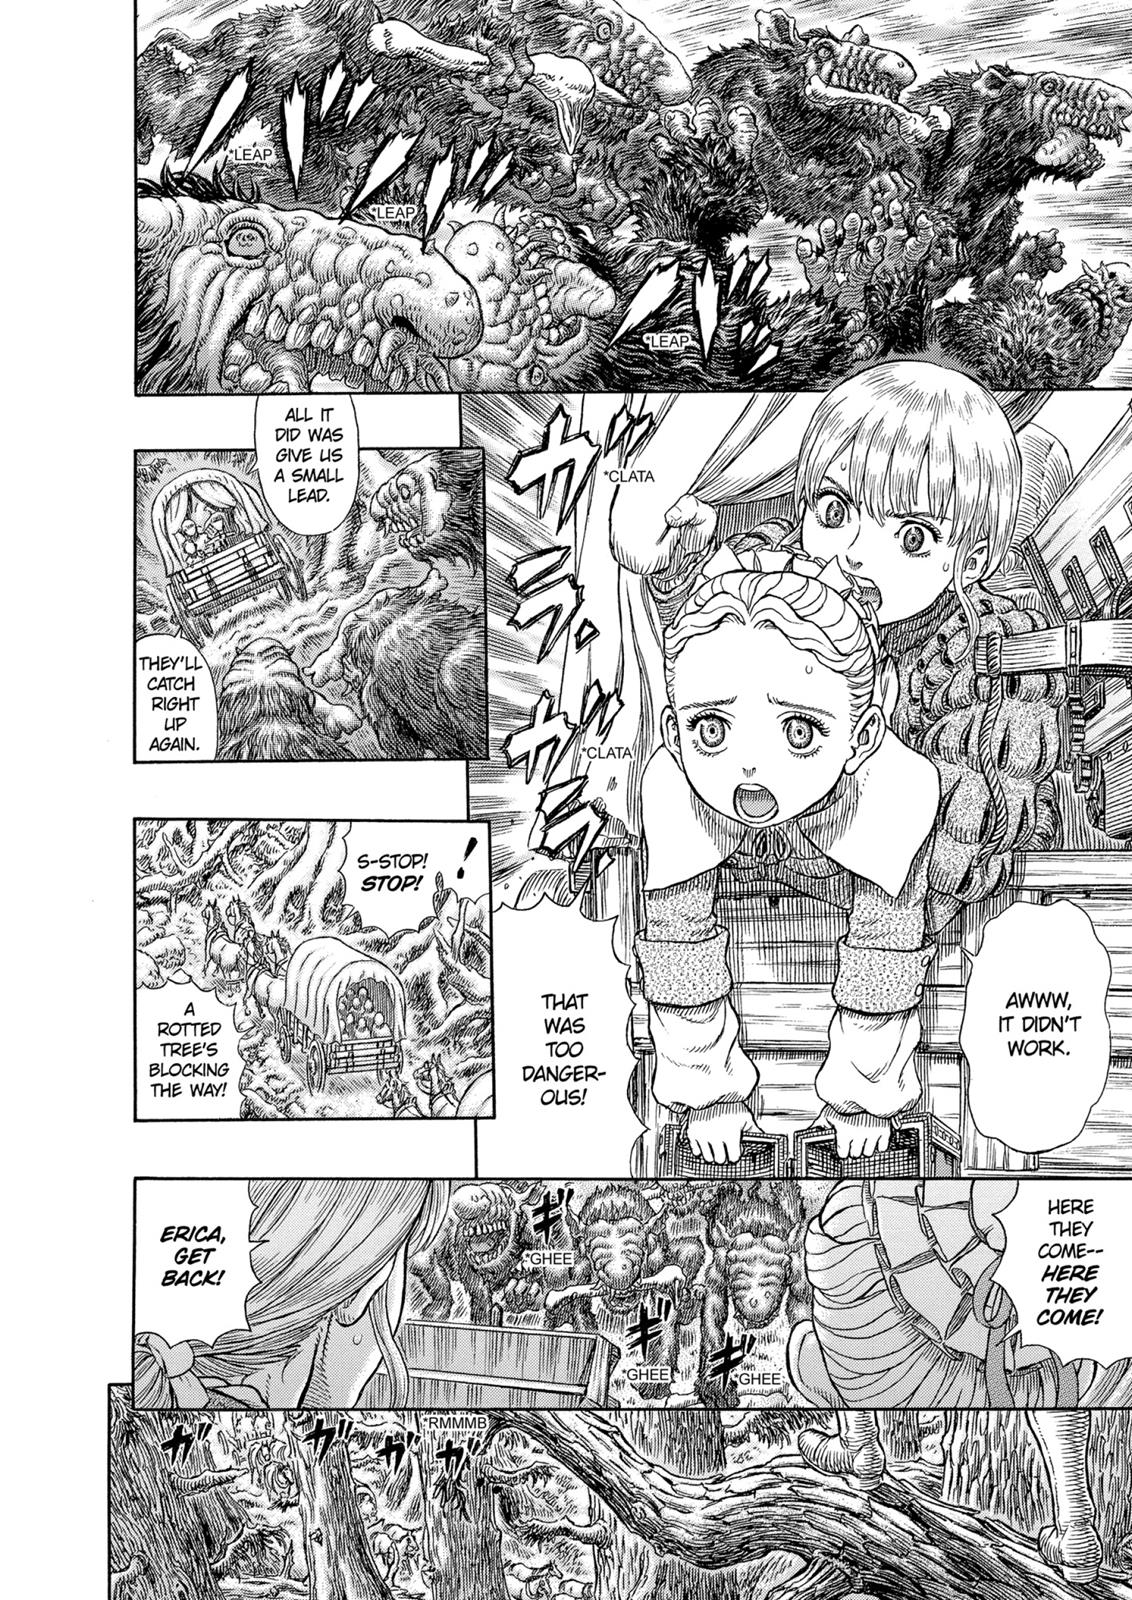 Berserk Manga Chapter 332 image 08